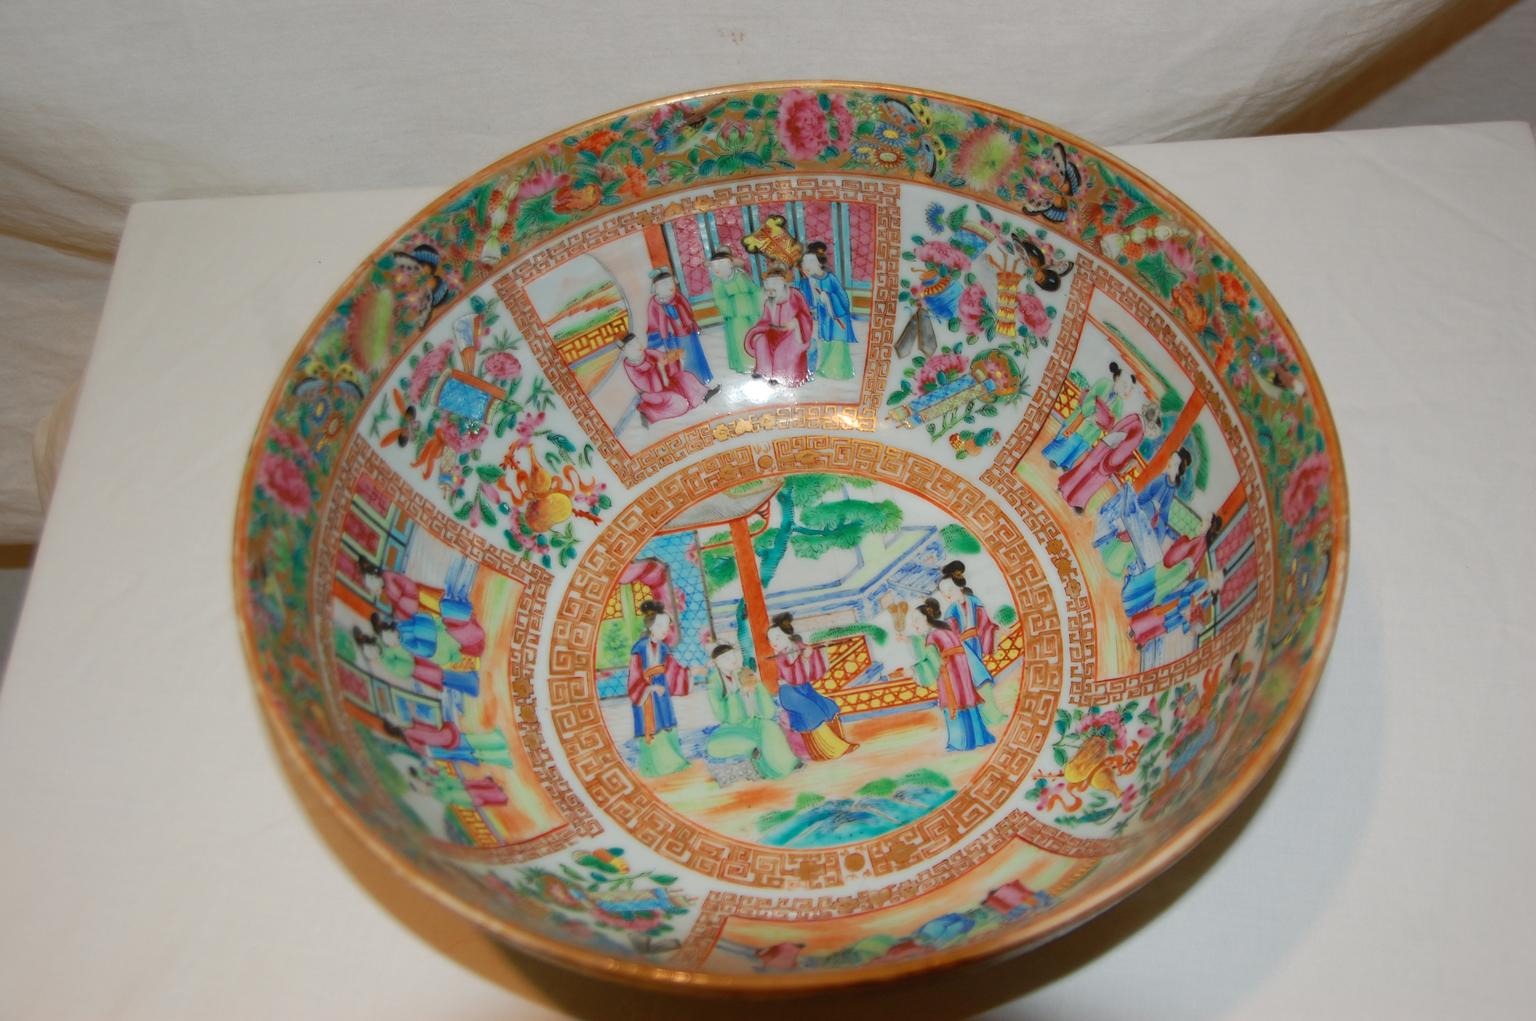 Ce bol à punch en forme de mandarine rose, exporté de Chine, a été peint à la main dans la première moitié du XIXe siècle avec des émaux surglacés de rose, vert, bleu, jaune et finement rehaussés d'or et de bordures complexes. La bordure supérieure